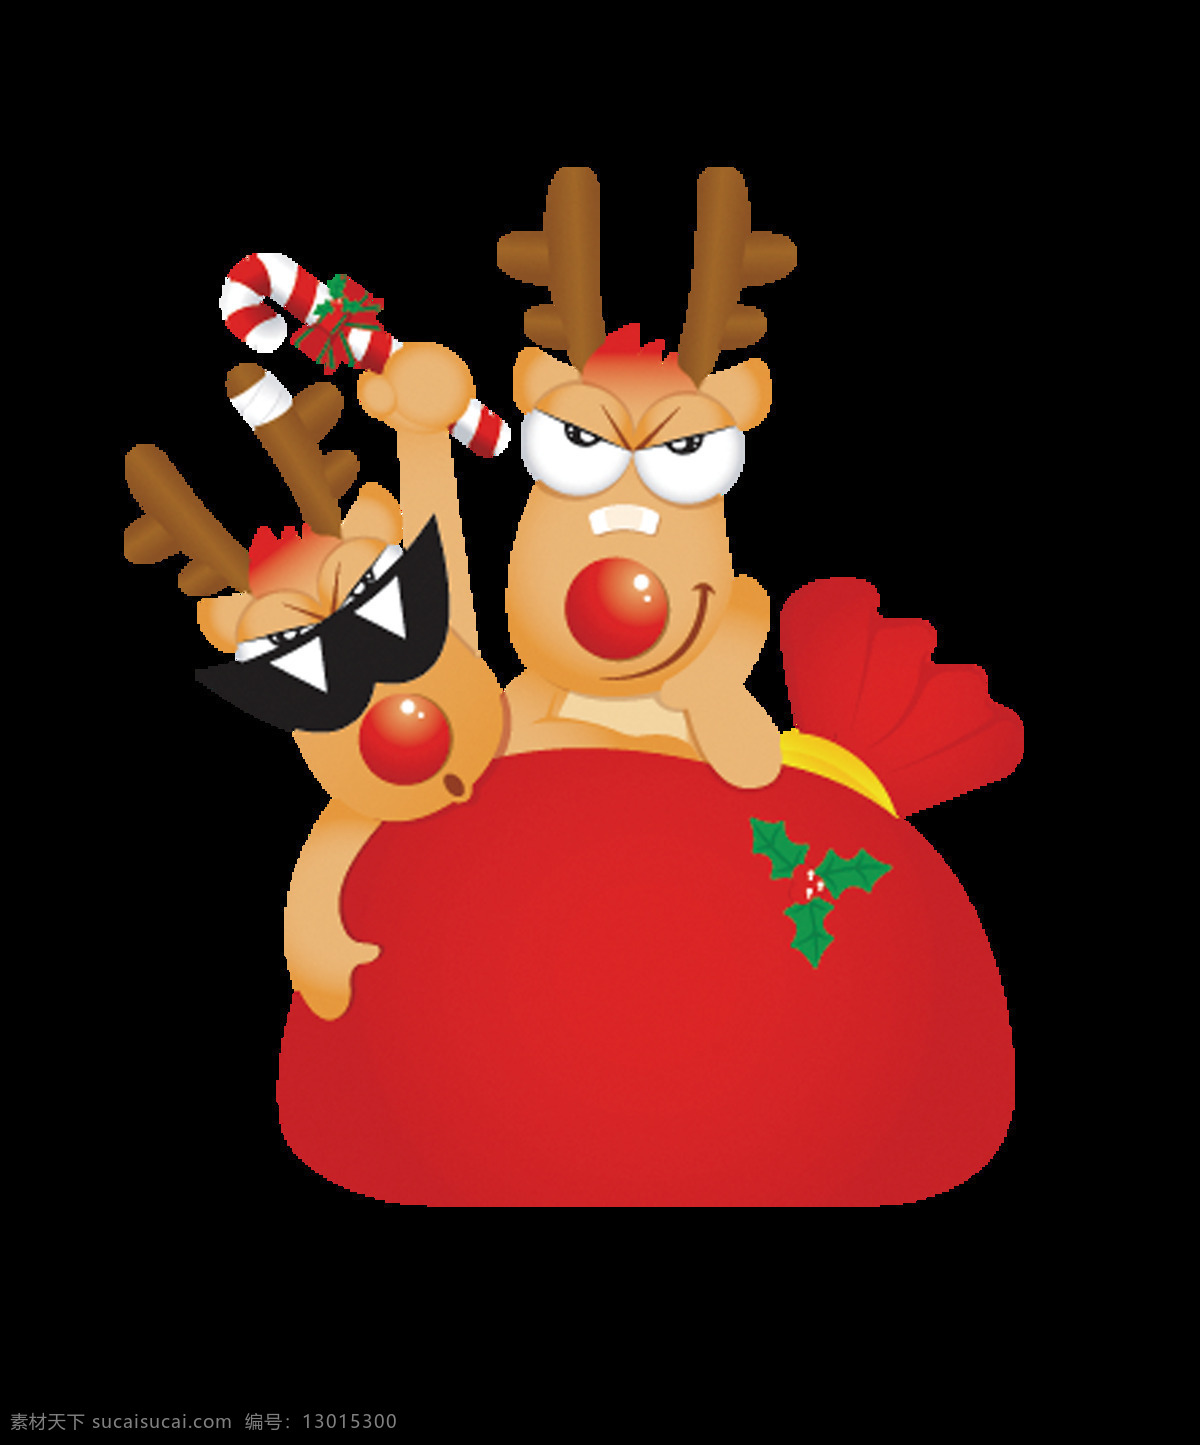 卡通 圣诞 麋鹿 元素 卡通元素 圣诞透明元素 圣诞节 圣诞老人 圣诞树 圣诞装饰 圣诞松枝 卡通圣诞元素 圣诞素材 圣诞帽 圣诞礼物 礼物袋